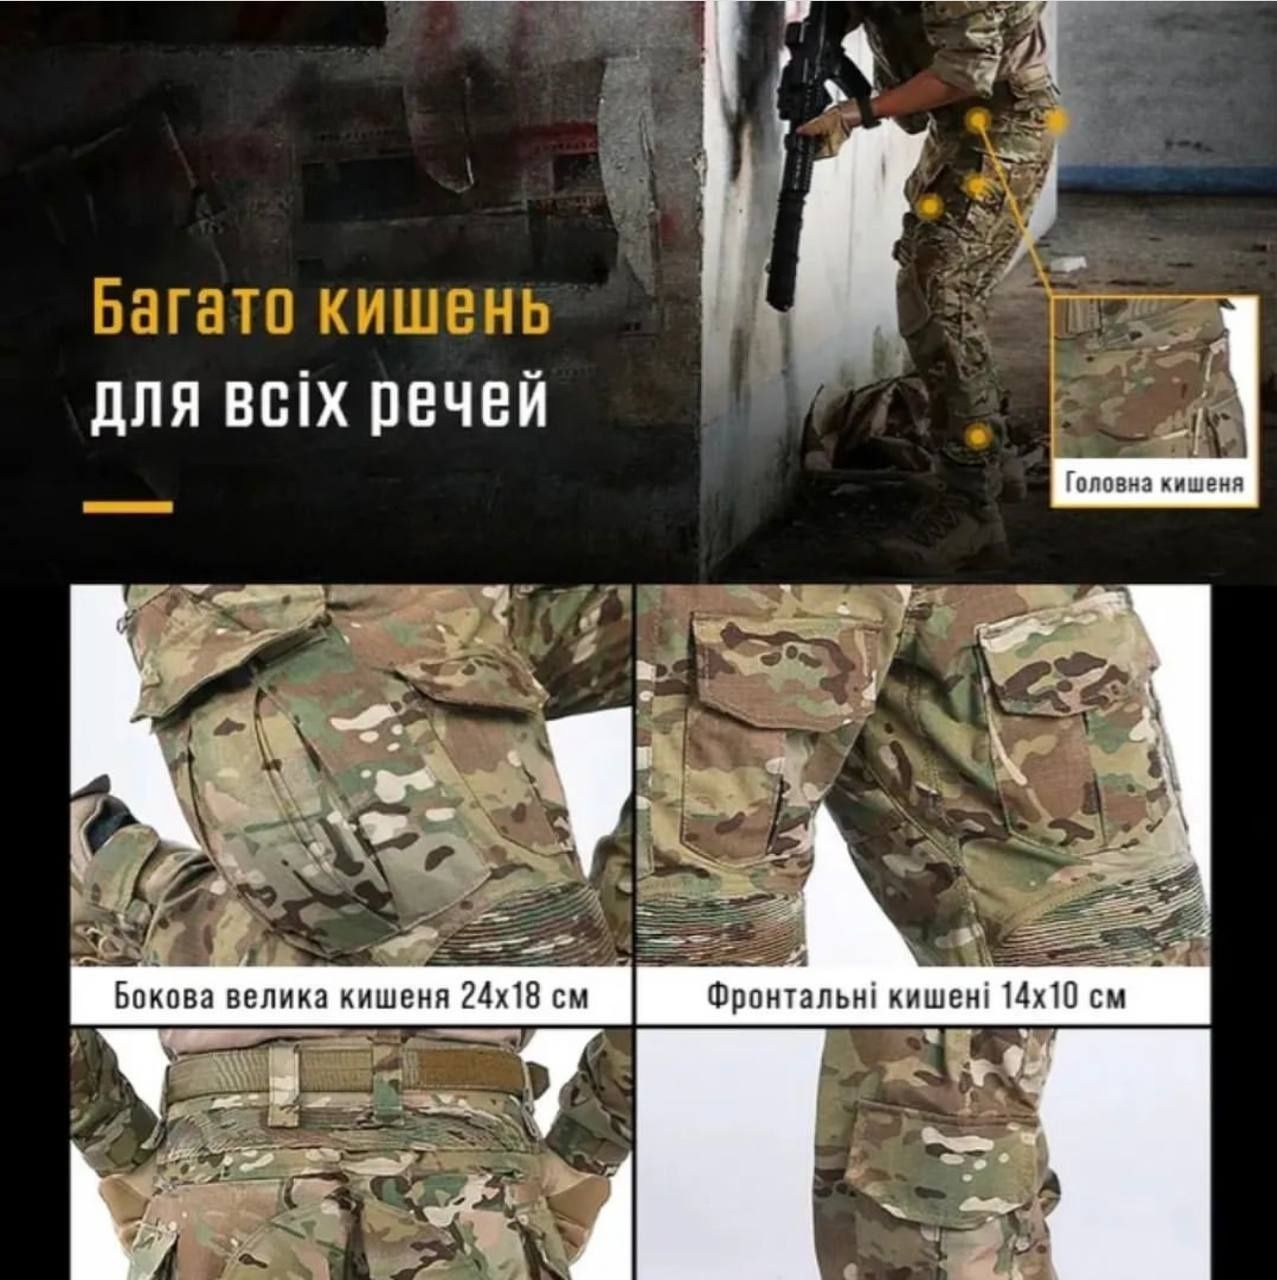 Тактичні штани з наколінниками IDOGEAR G3 мультикам S M L XL 2XL 3XL